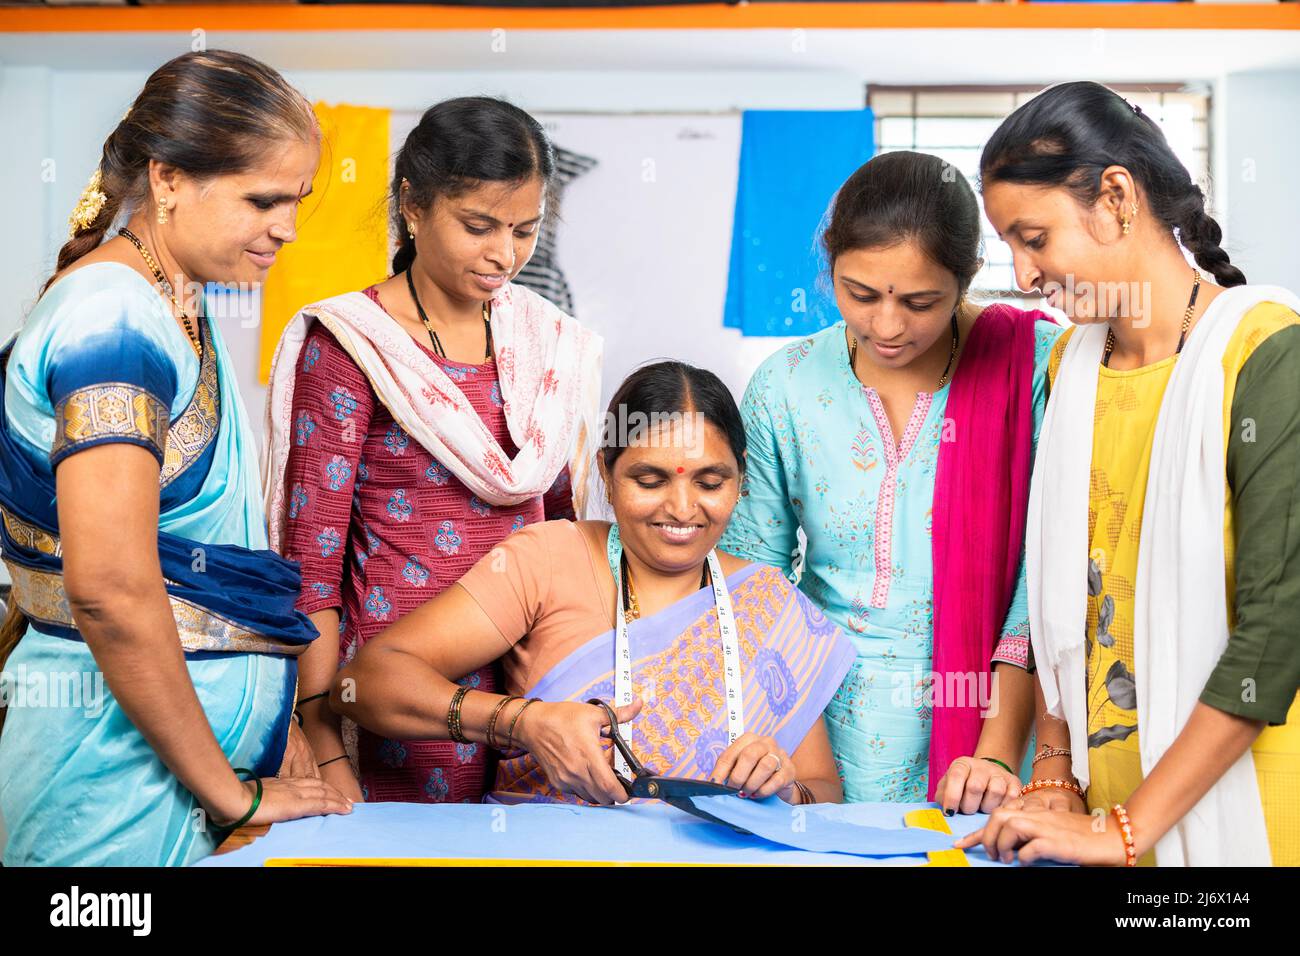 il formatore spiega o guida per tagliare i vestiti a gruppo di donne studenti al centro di formazione - concetto di apprendimento, empowerment e occupazione Foto Stock